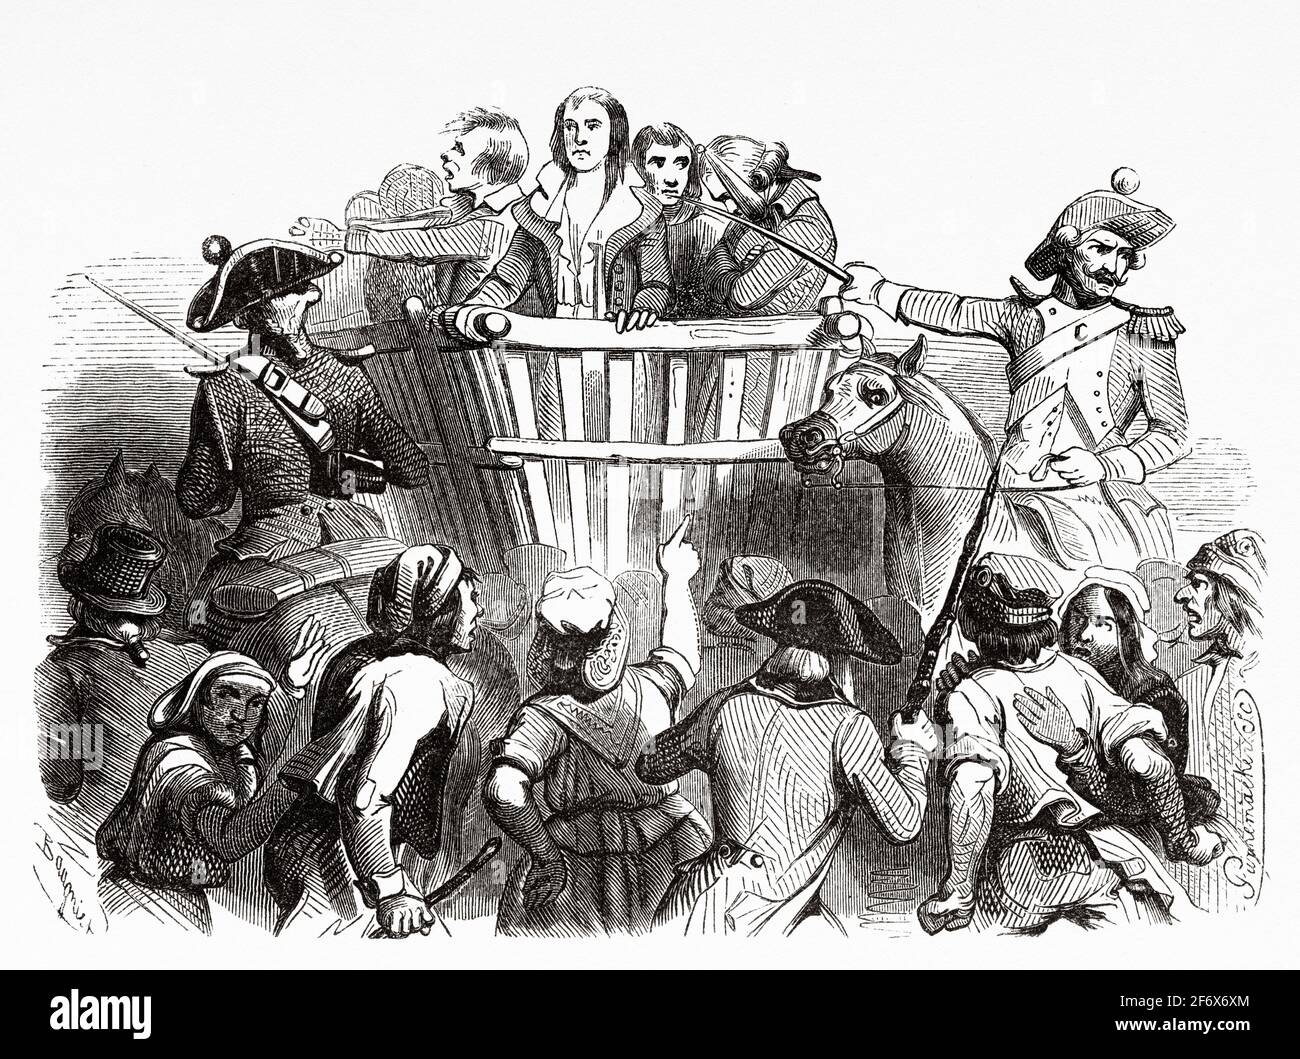 Robespierre und seine Komplizen werden zu ihrer Hinrichtung geführt, 1794. Frankreich, Französische Revolution 18. Jahrhundert. Alte gravierte Illustration aus Histoire de la Revolution Francaise 1845 Stockfoto